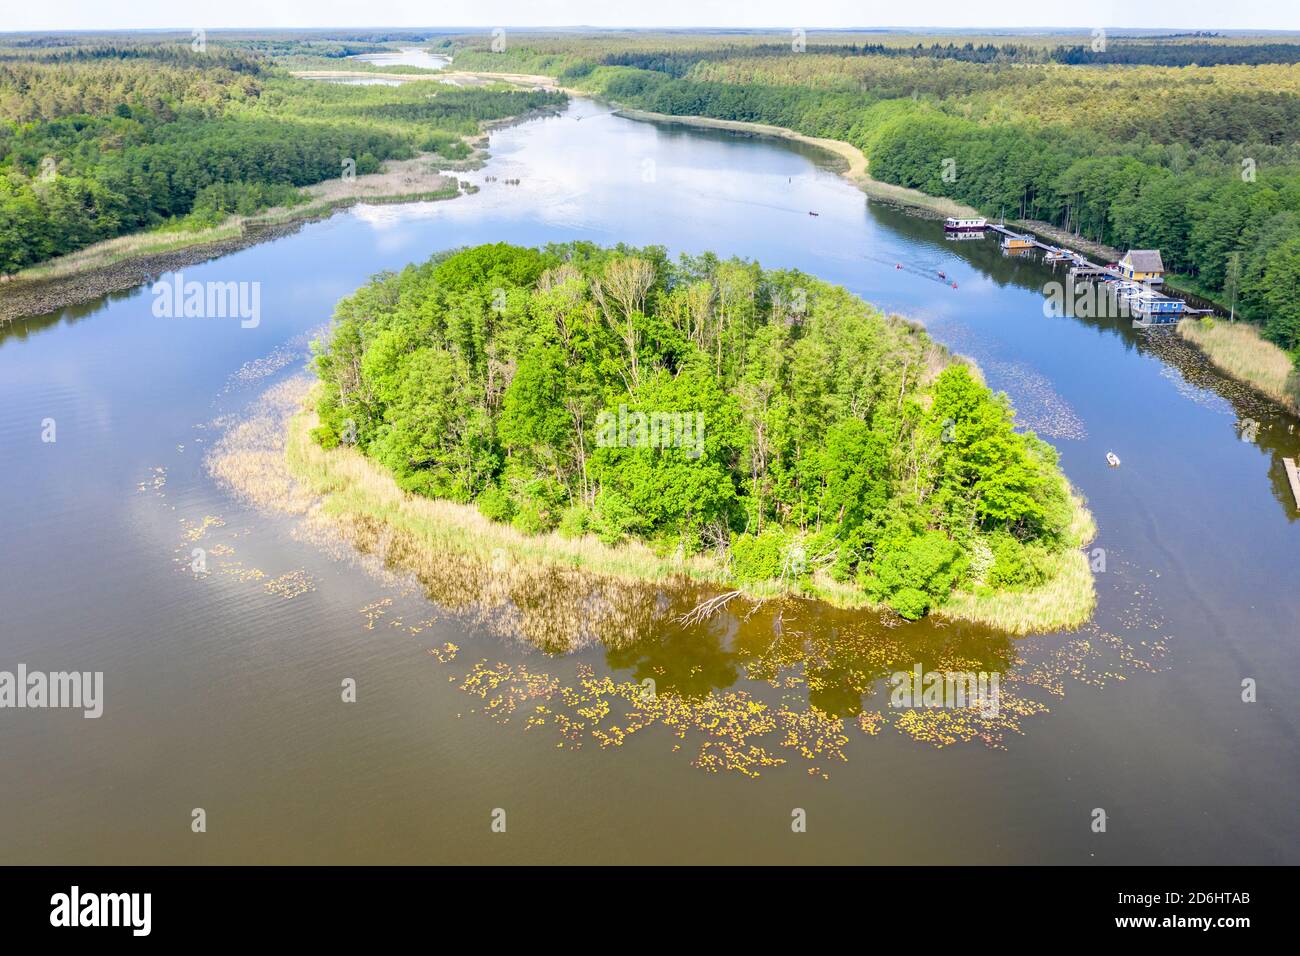 Drone shot, aerial view over island in lake Granzower Möschen, Mecklenburg lake district, Mecklenburg-Vorpommern, Germany Stock Photo